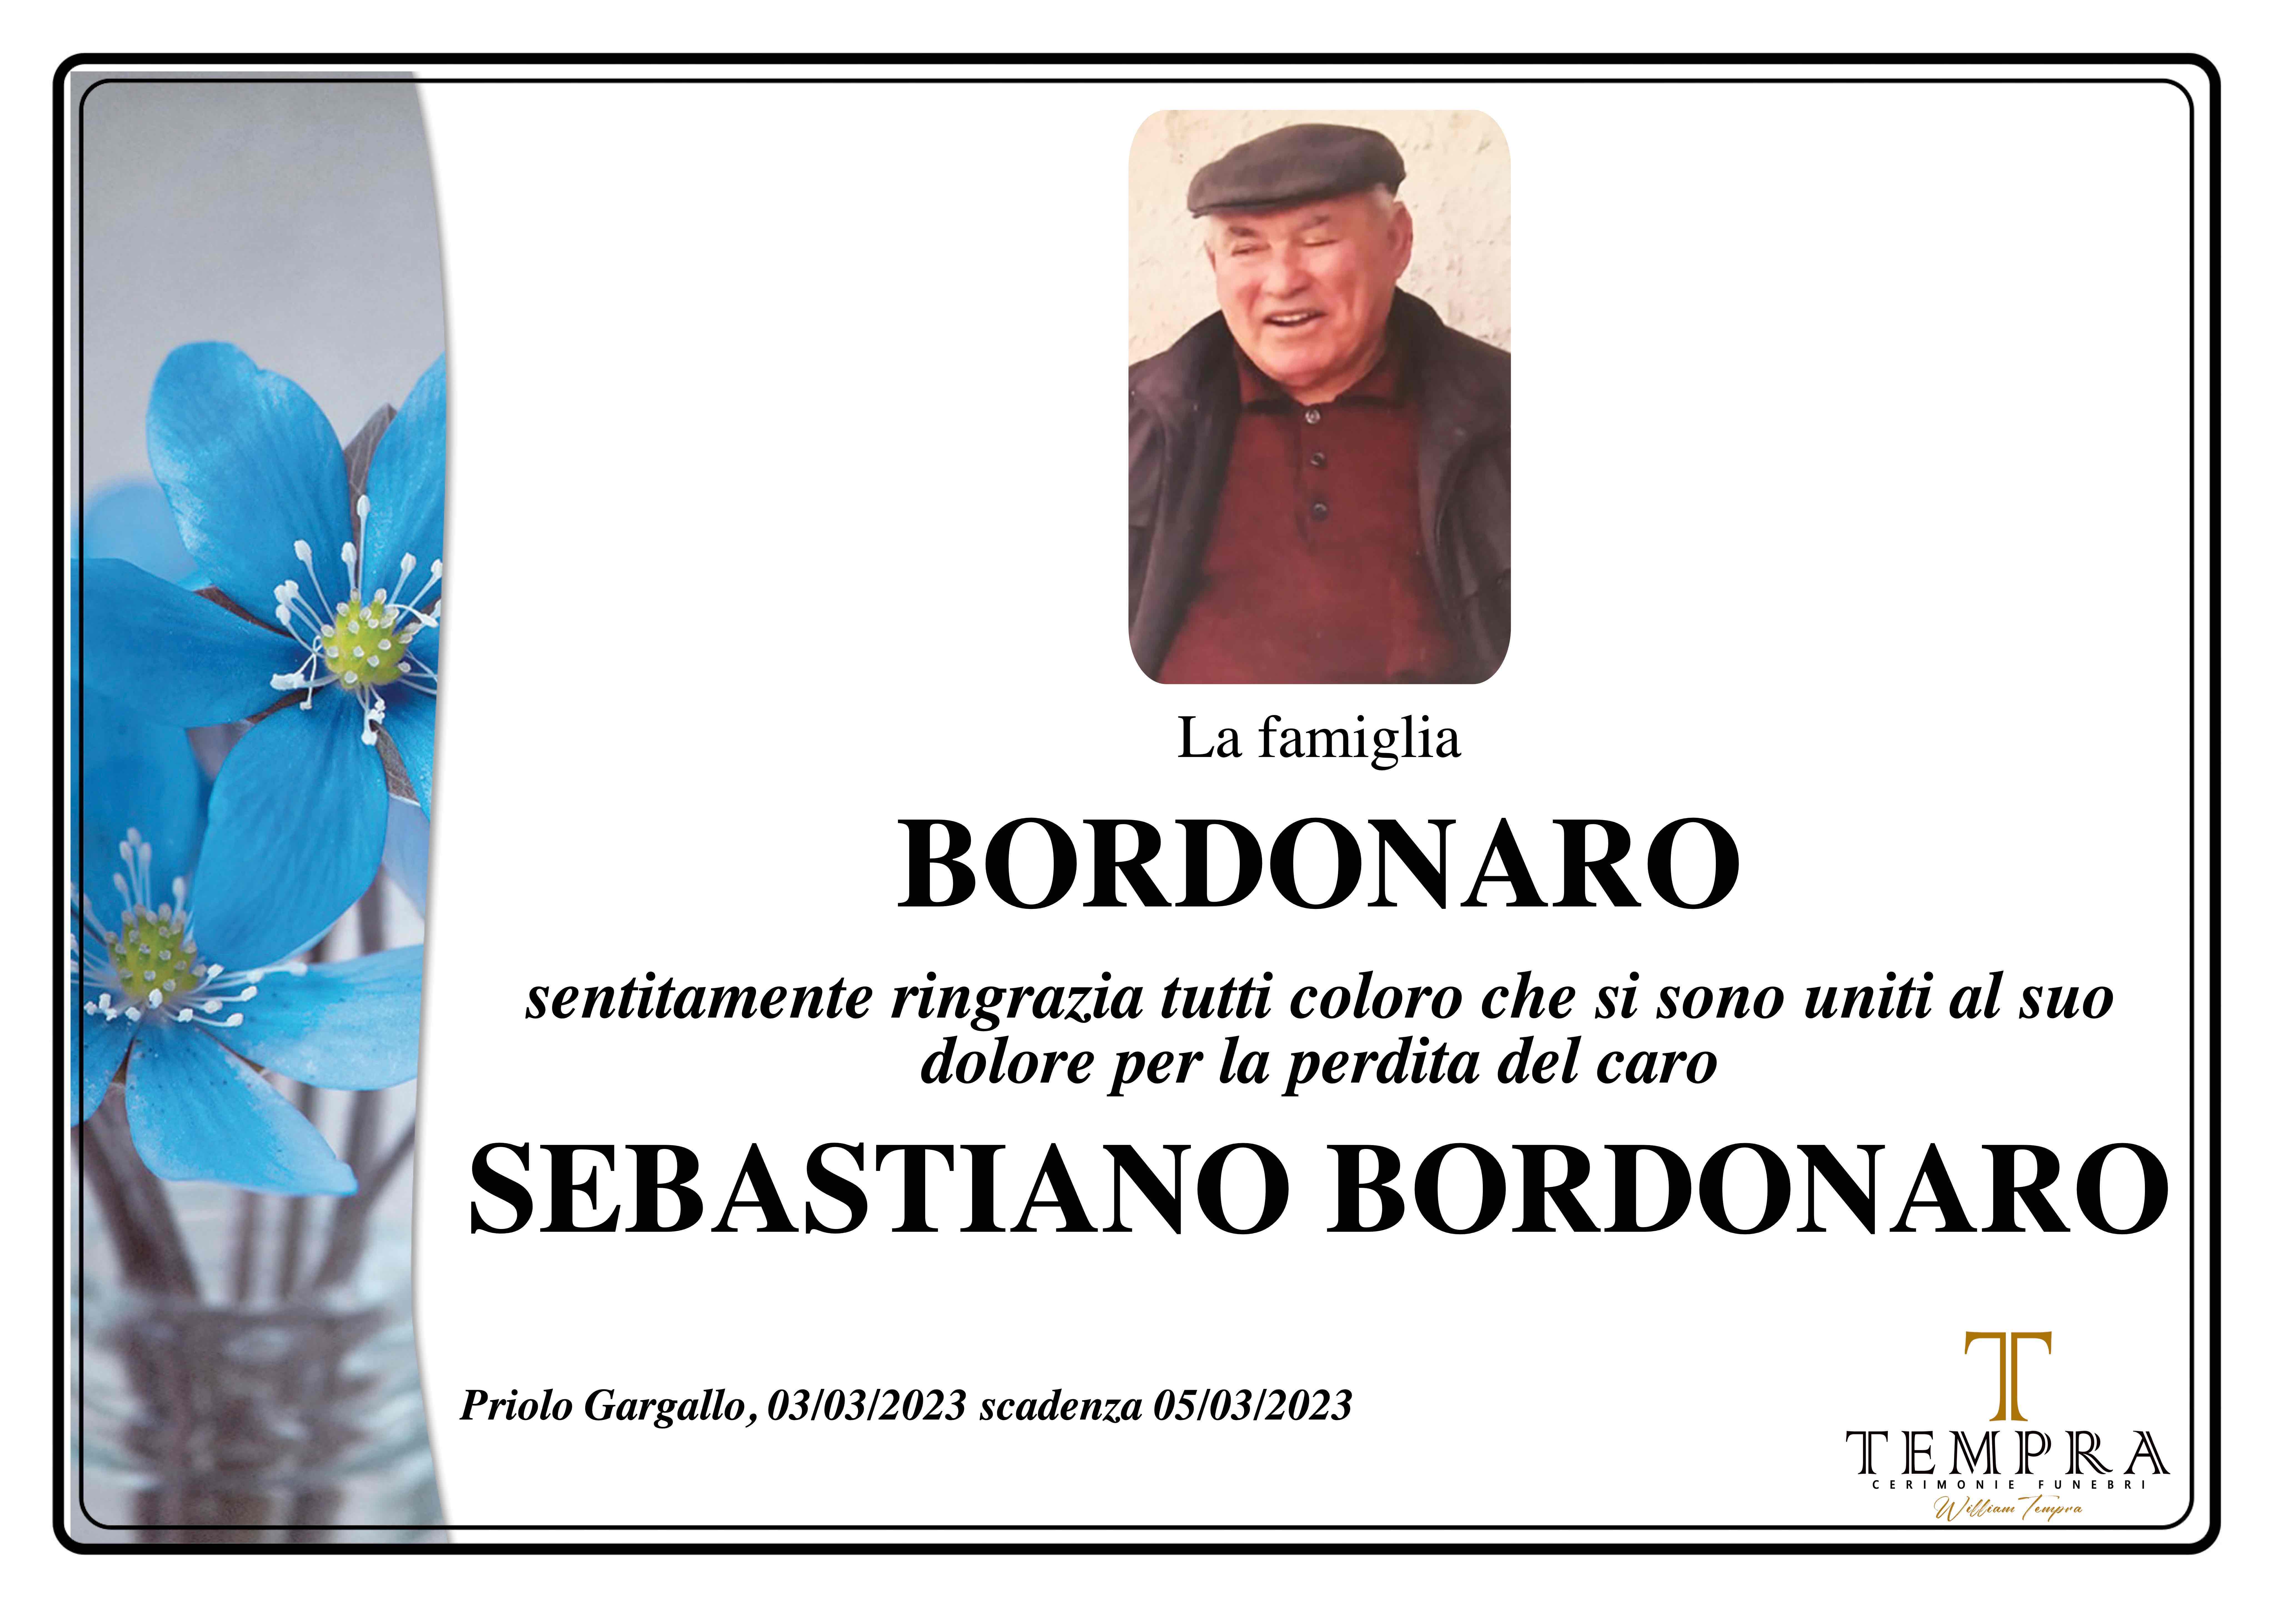 Sebastiano Bordonaro